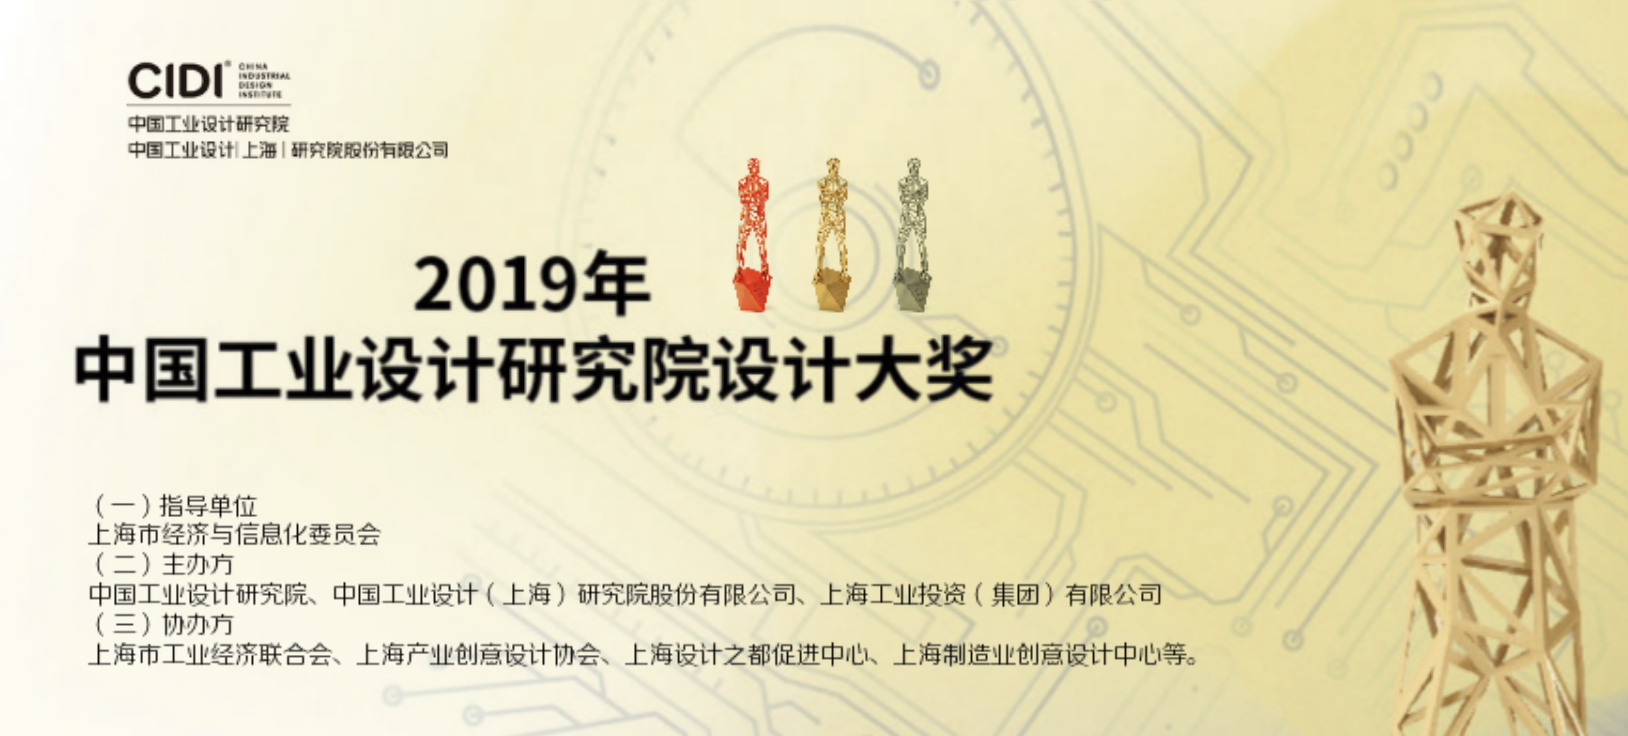 2019年中国工业设计研究院工业设计大奖活动通知